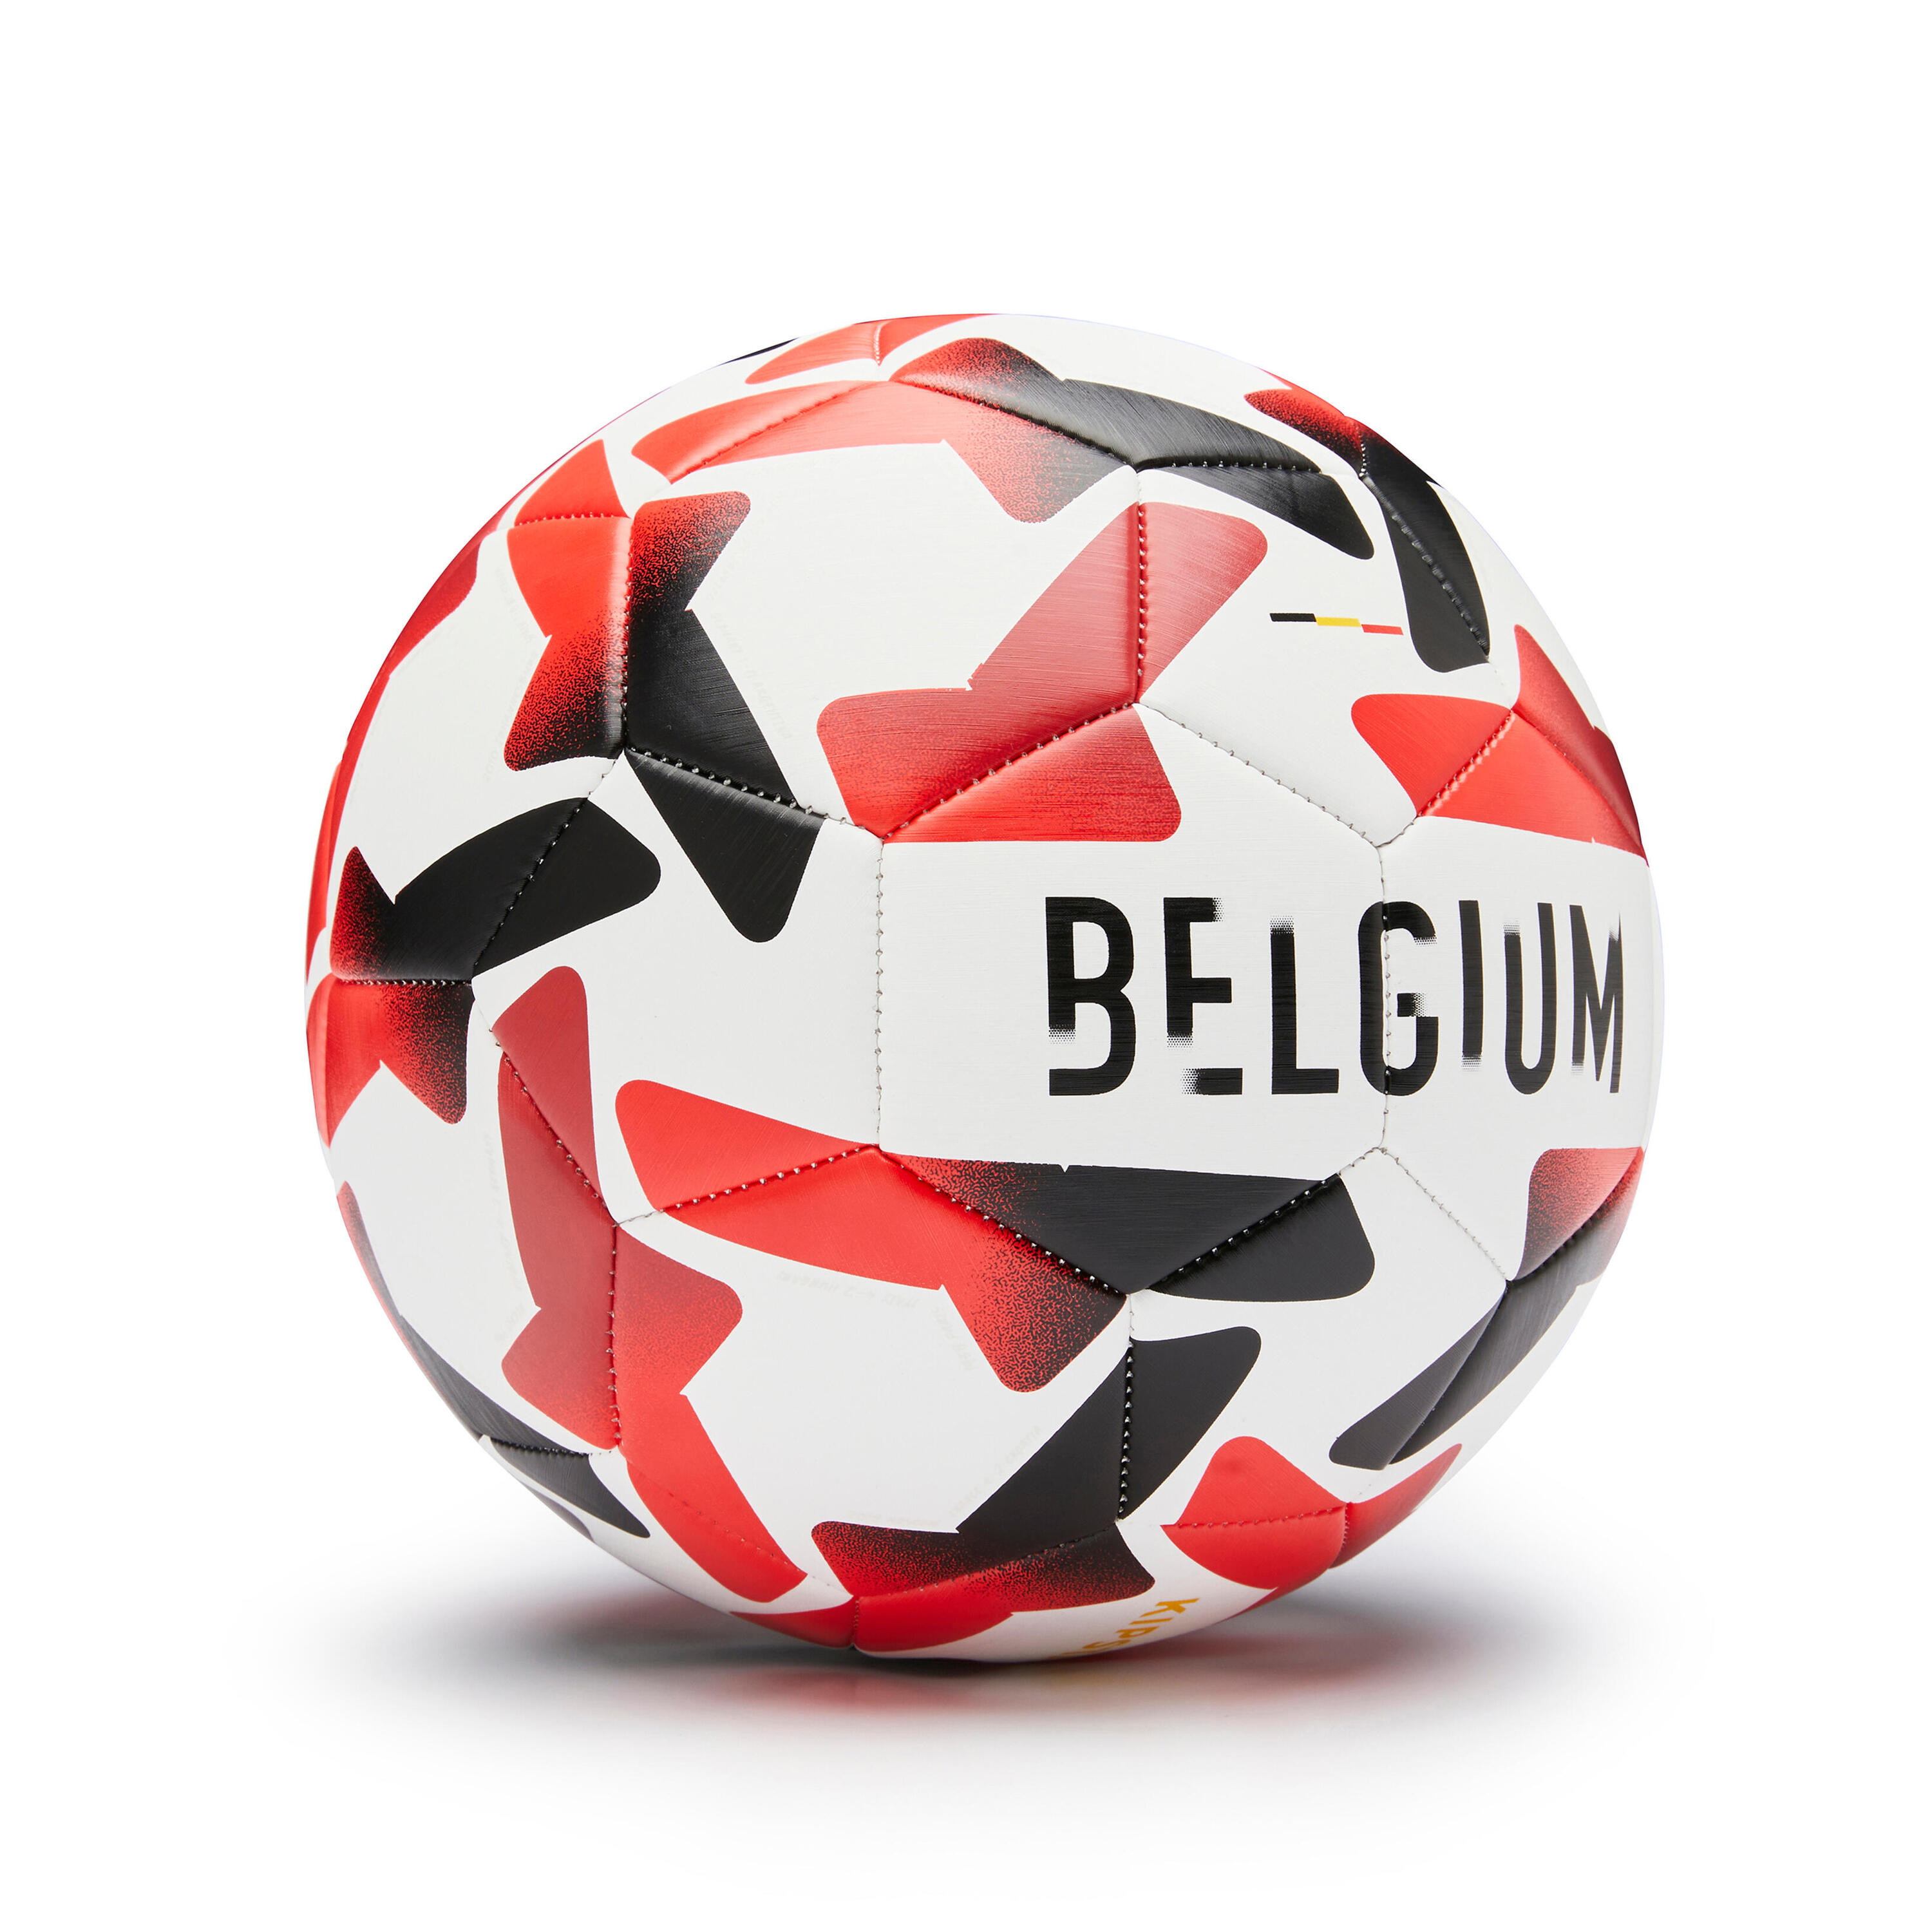 Мяч футбольный тренировочный Бельгия 2022 размер 5 KIPSTA, белый/красный/черный футбольный мяч 5 с симв фк барселона brand free бело красный пакистан 5 красный белый мяч спортивный 5